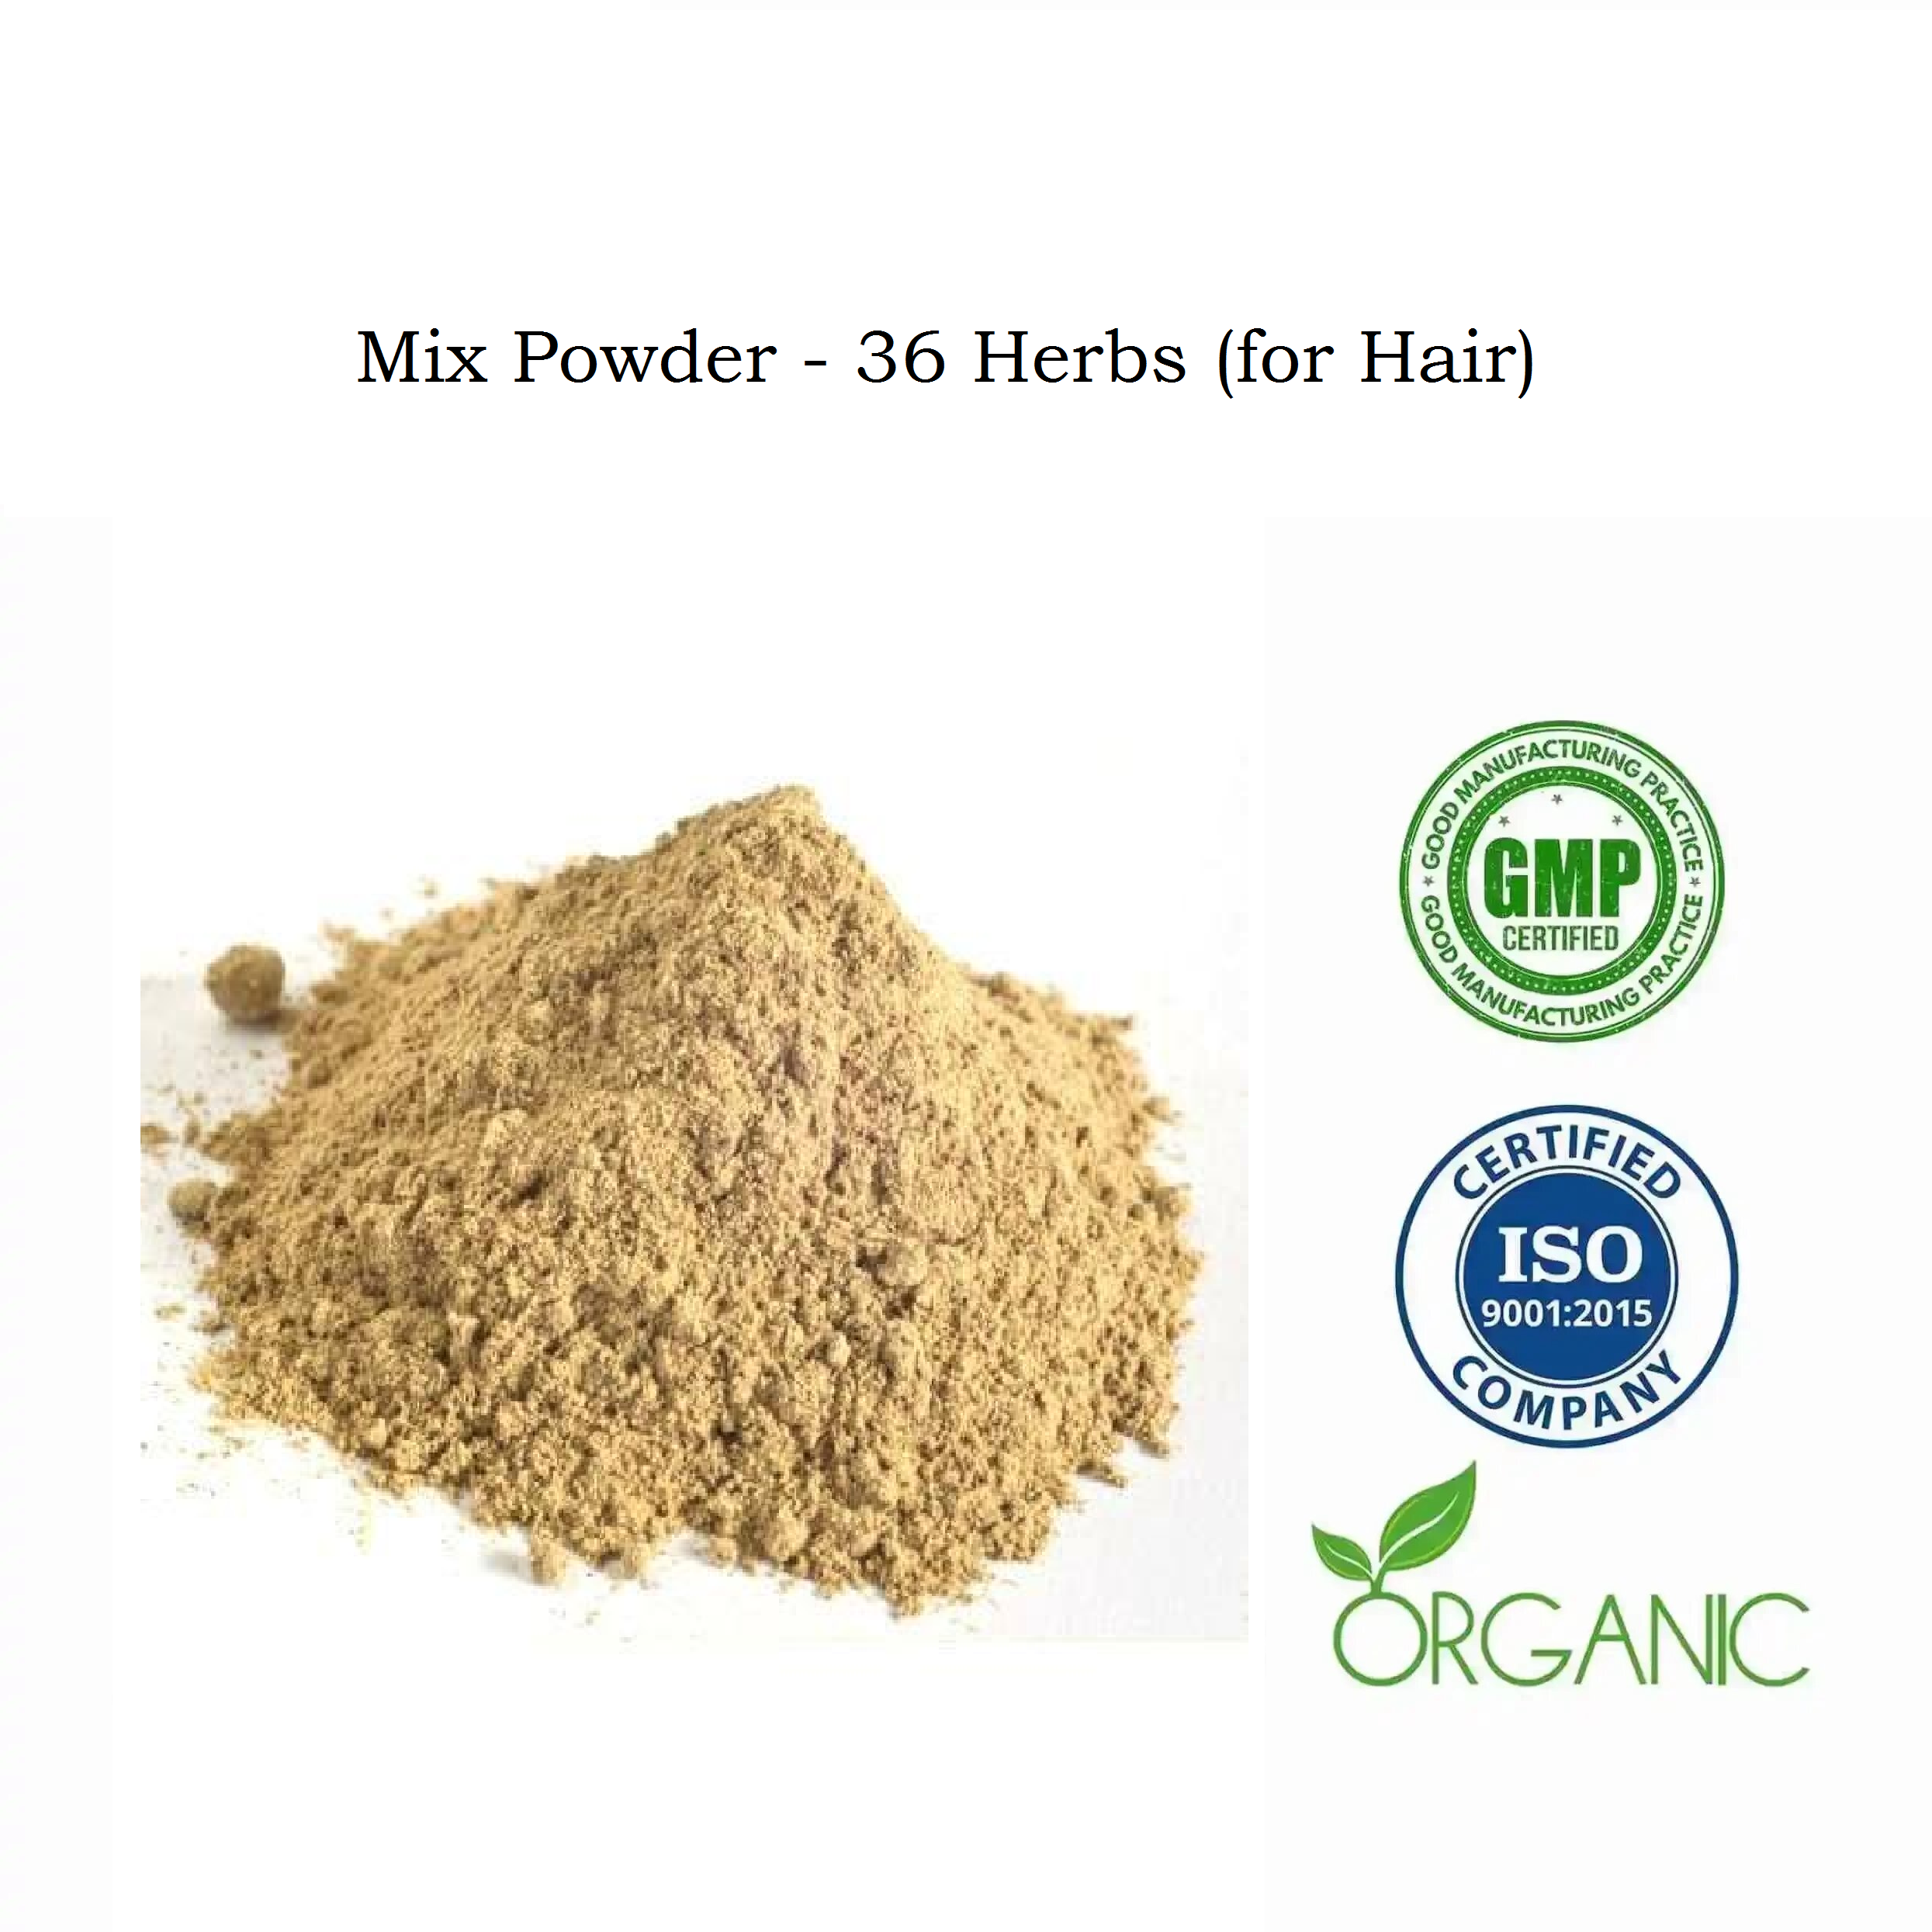 Mix Powder - 36 Herbs (for Hair)